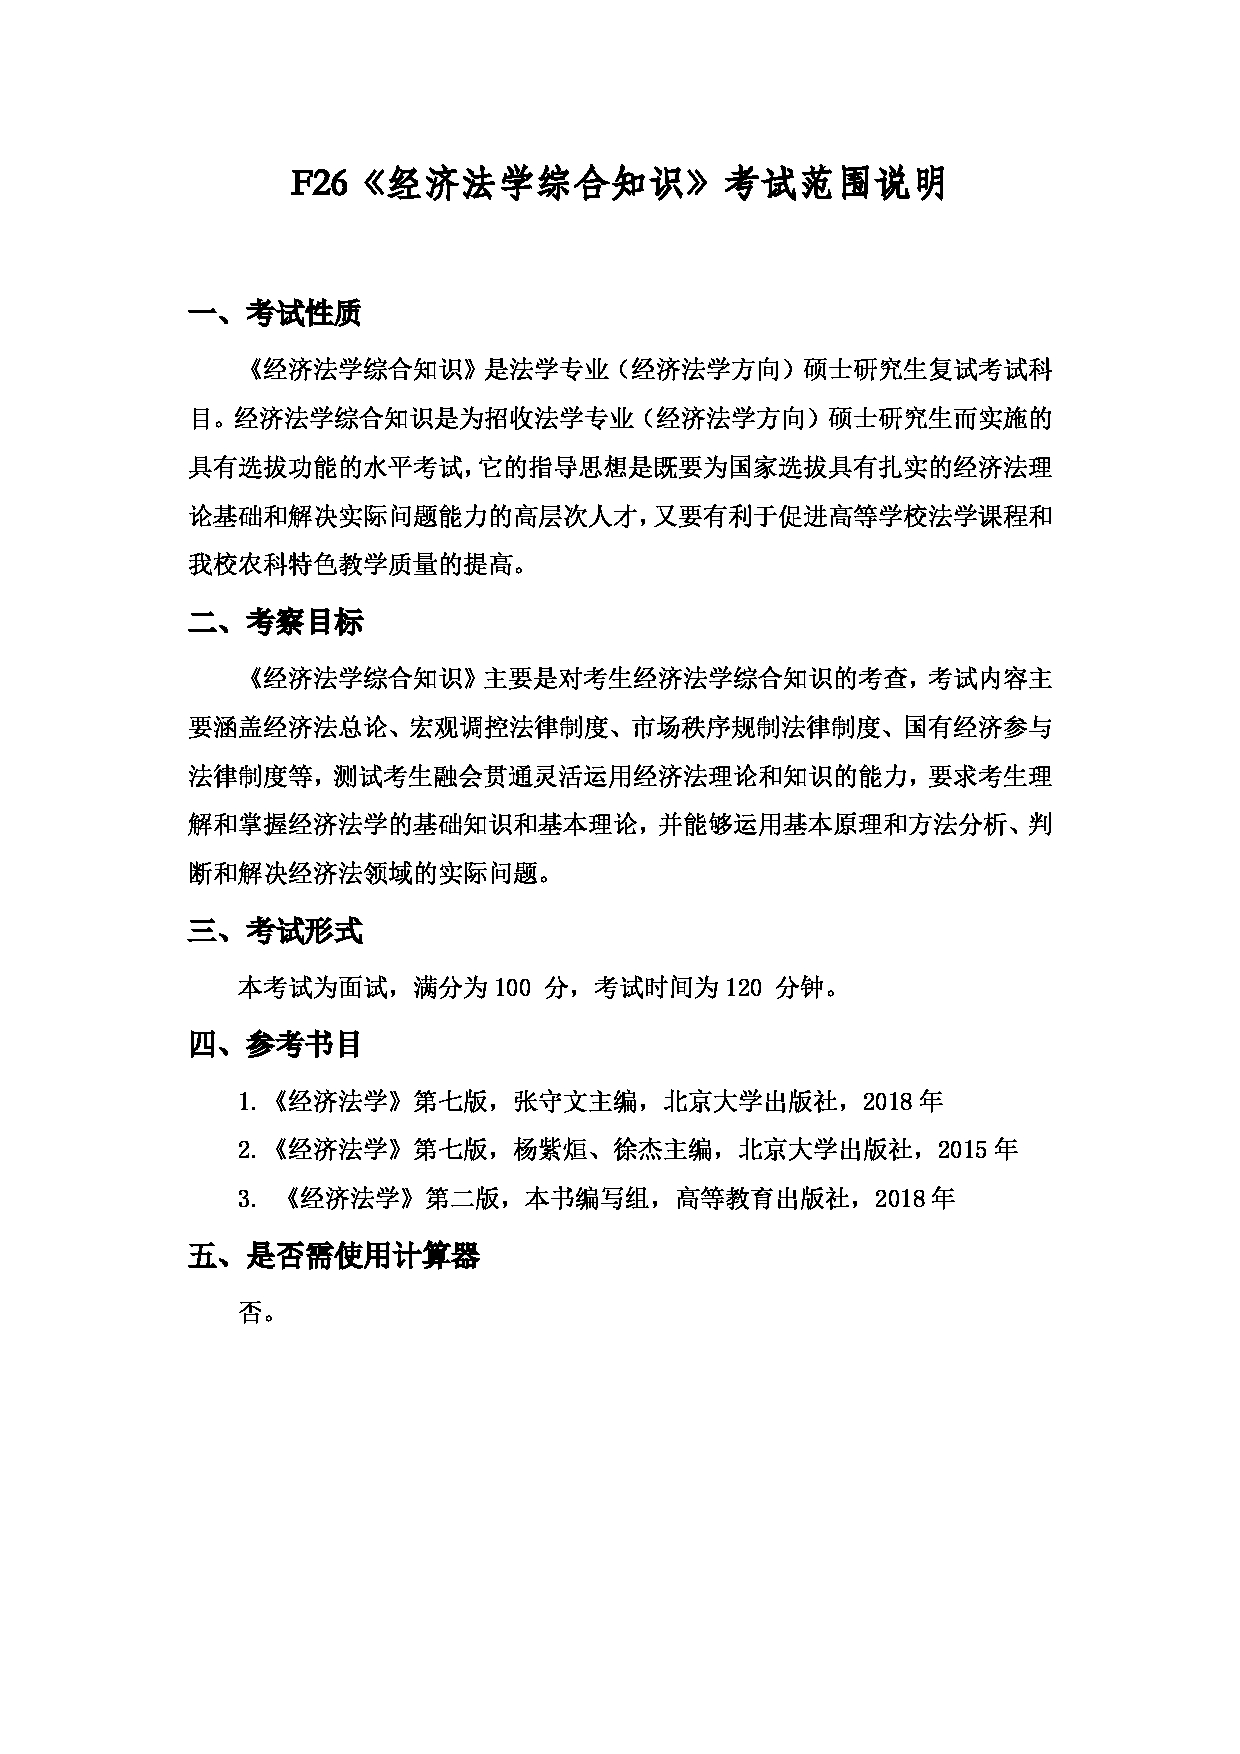 2022考研大纲：上海海洋大学2022年考研自命题科目 F26经济法学综合知识 考试大纲第1页